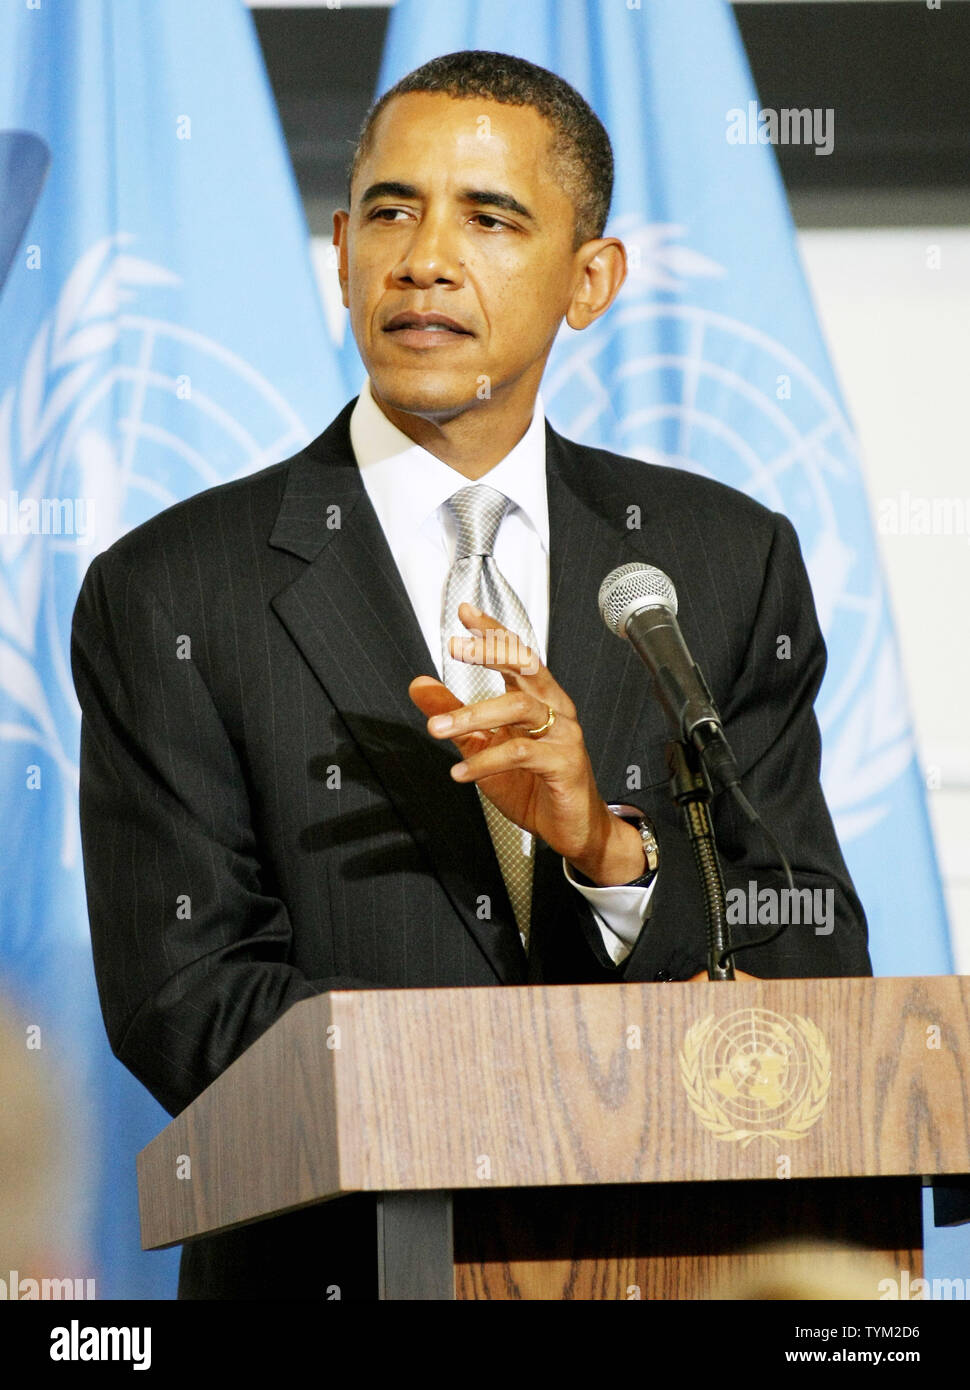 Us-Präsident Barack Obama spricht auf einer Tagung auf hoher Ebene Sudan während der 65. Tagung der Generalversammlung der Vereinten Nationen bei der UN am 24. September 2010 in New York. UPI/Monika Graff Stockfoto